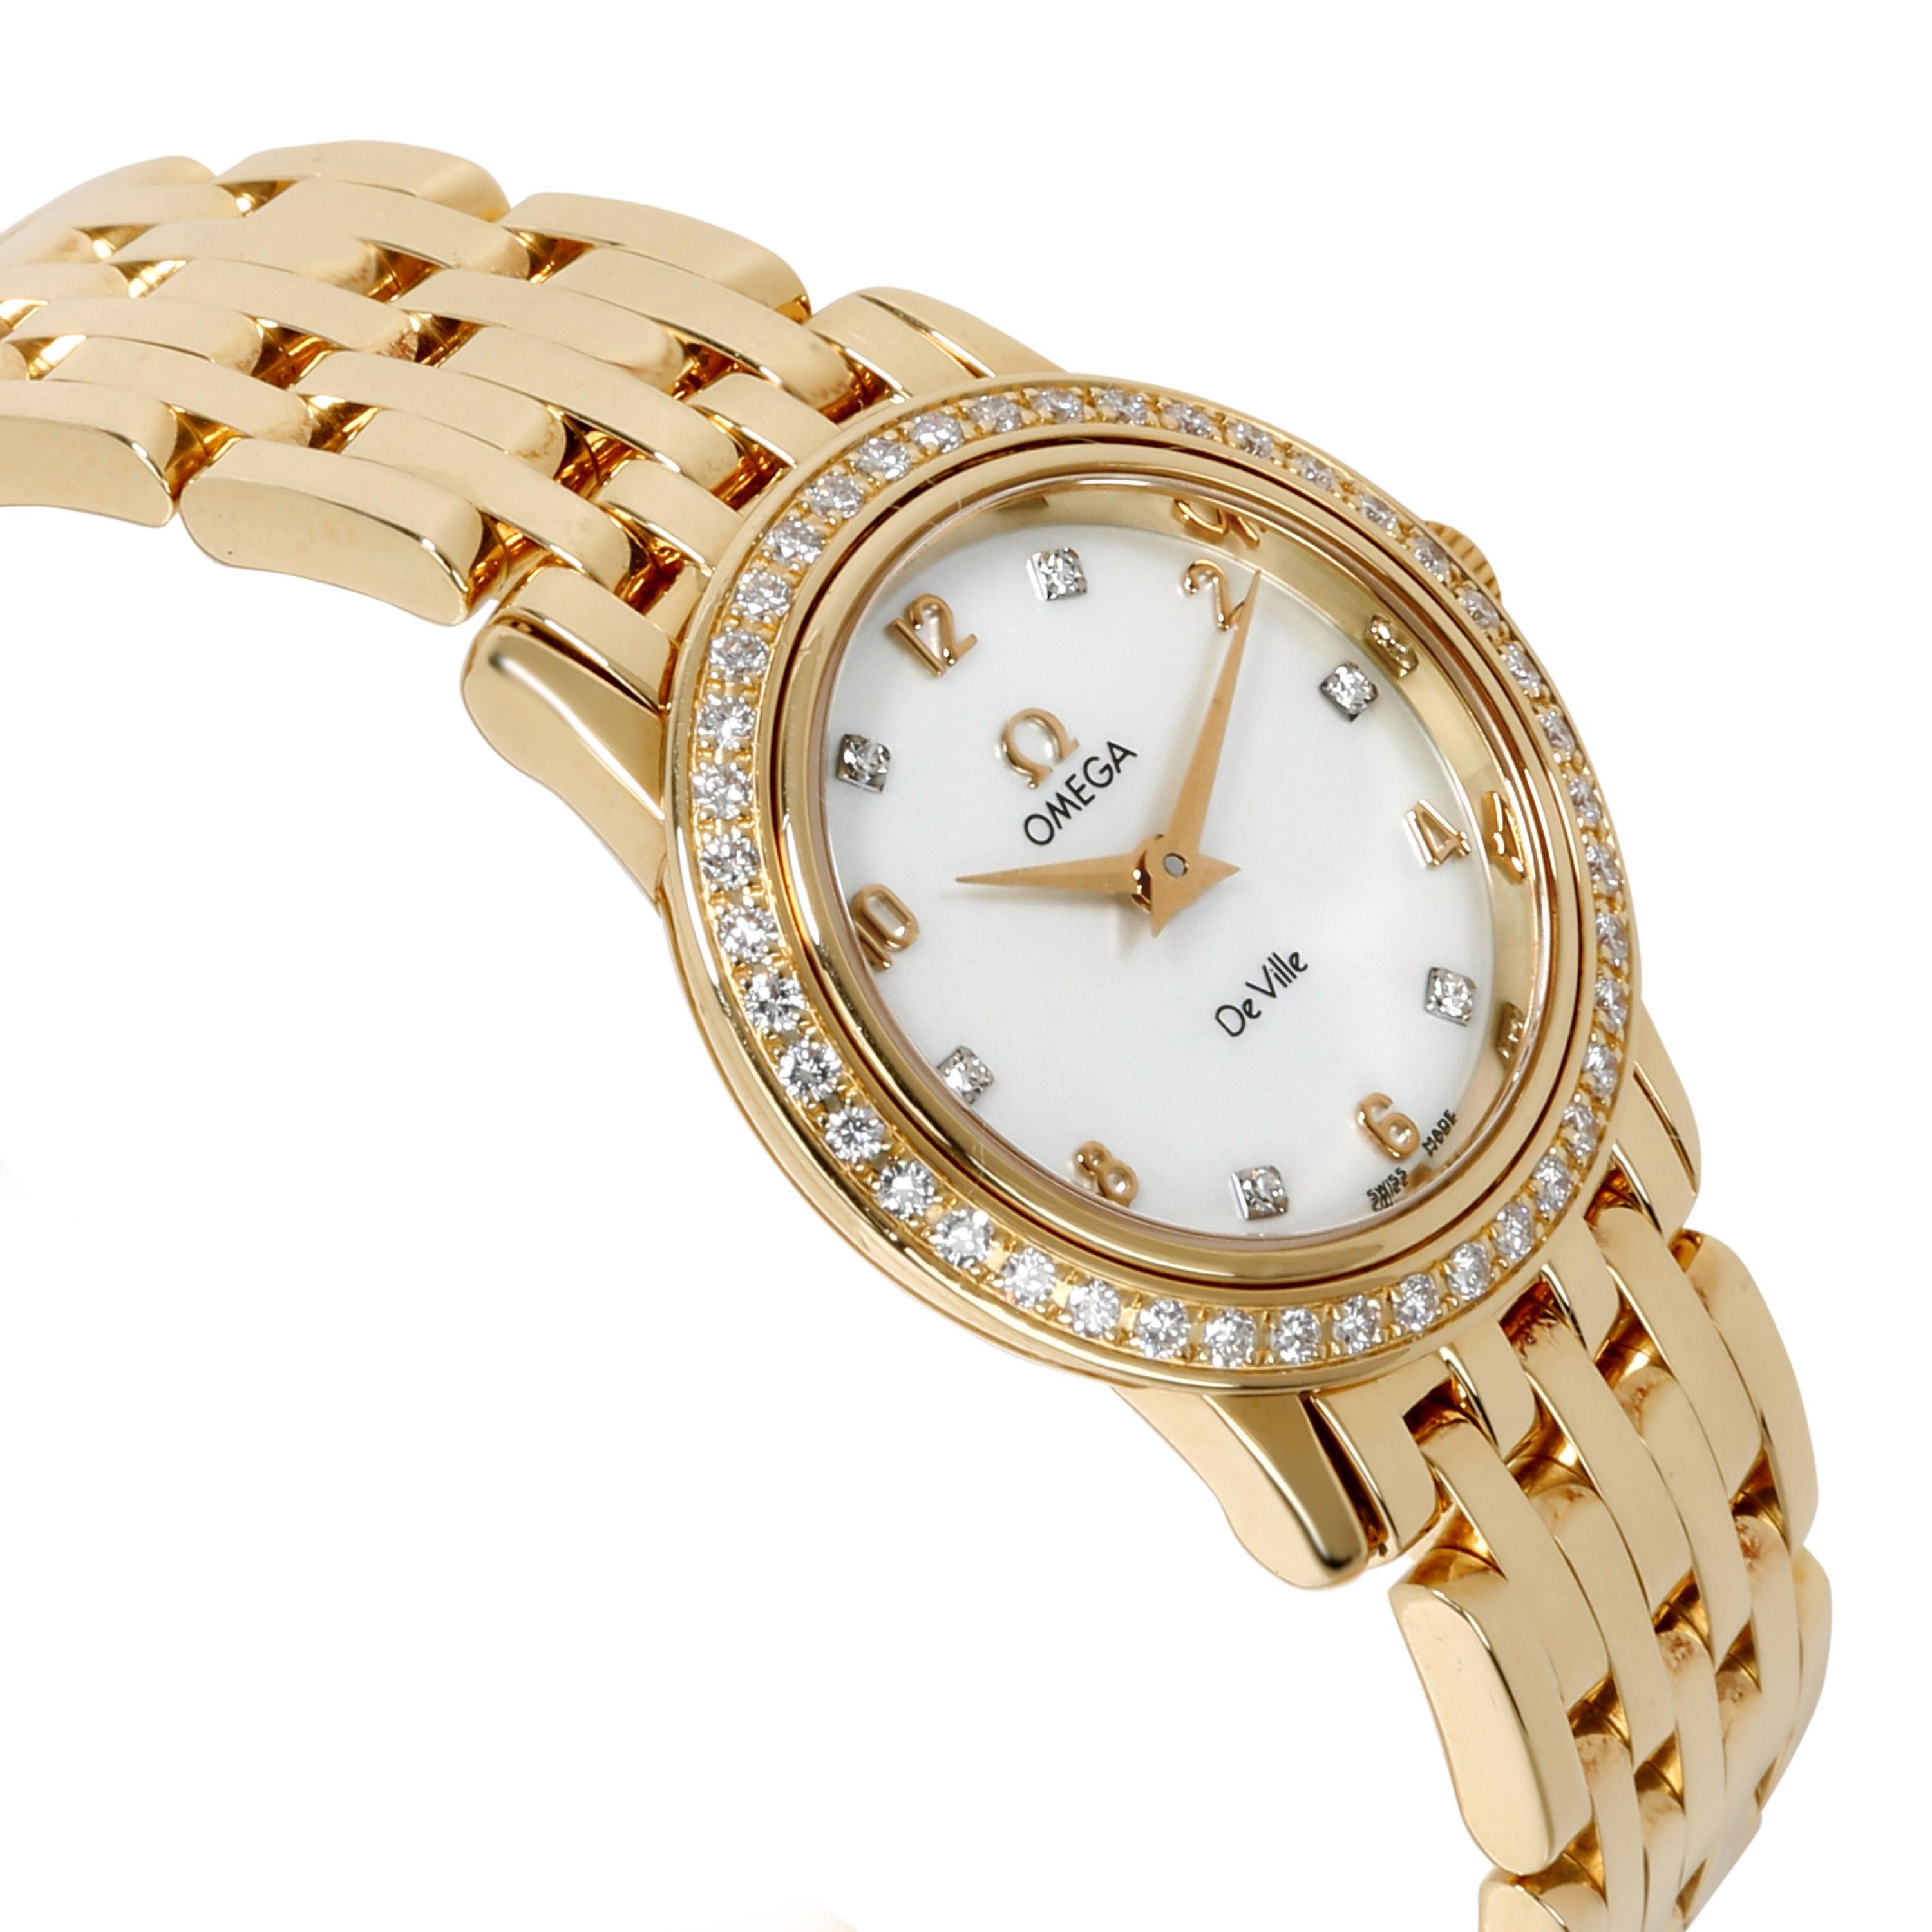 Omega De Ville Prestige 4175.75.00 Women's Watch in 18 Karat Yellow Gold 1